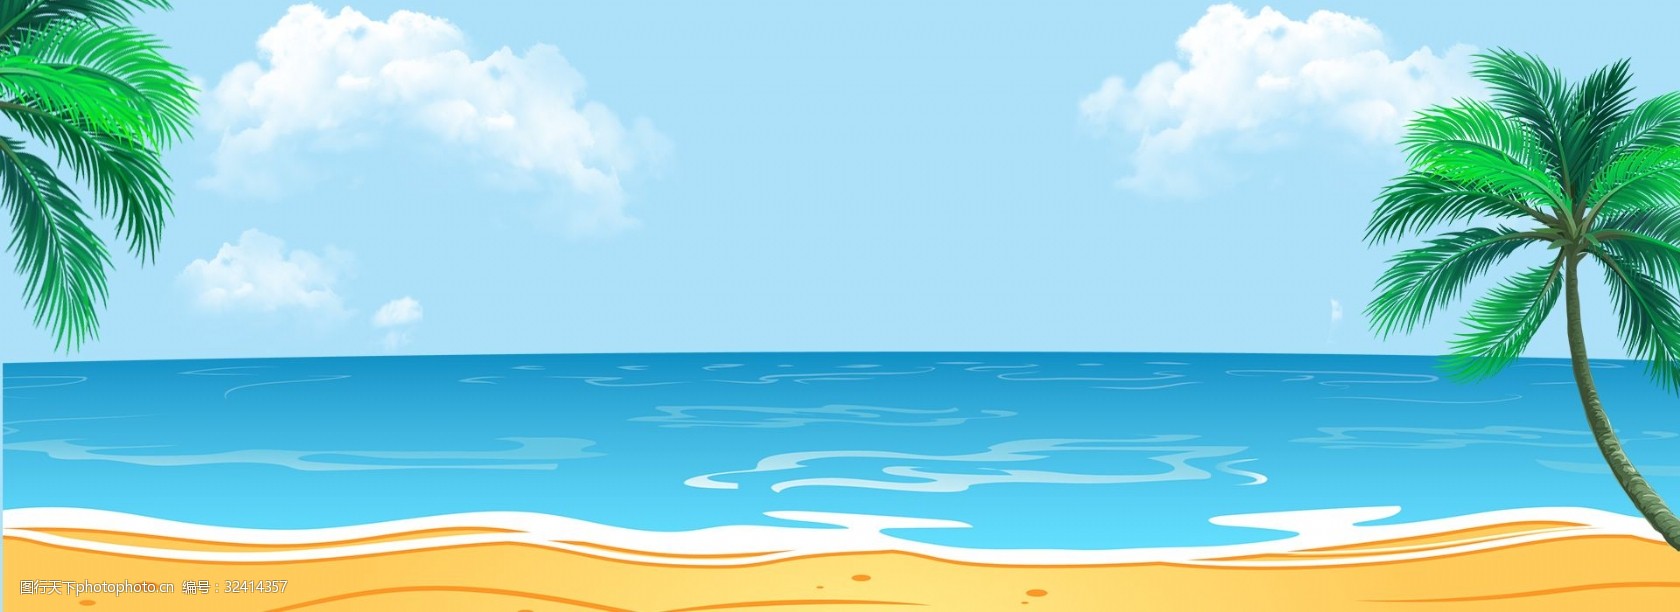 夏日海边蓝色天空棕榈树沙滩背景海面